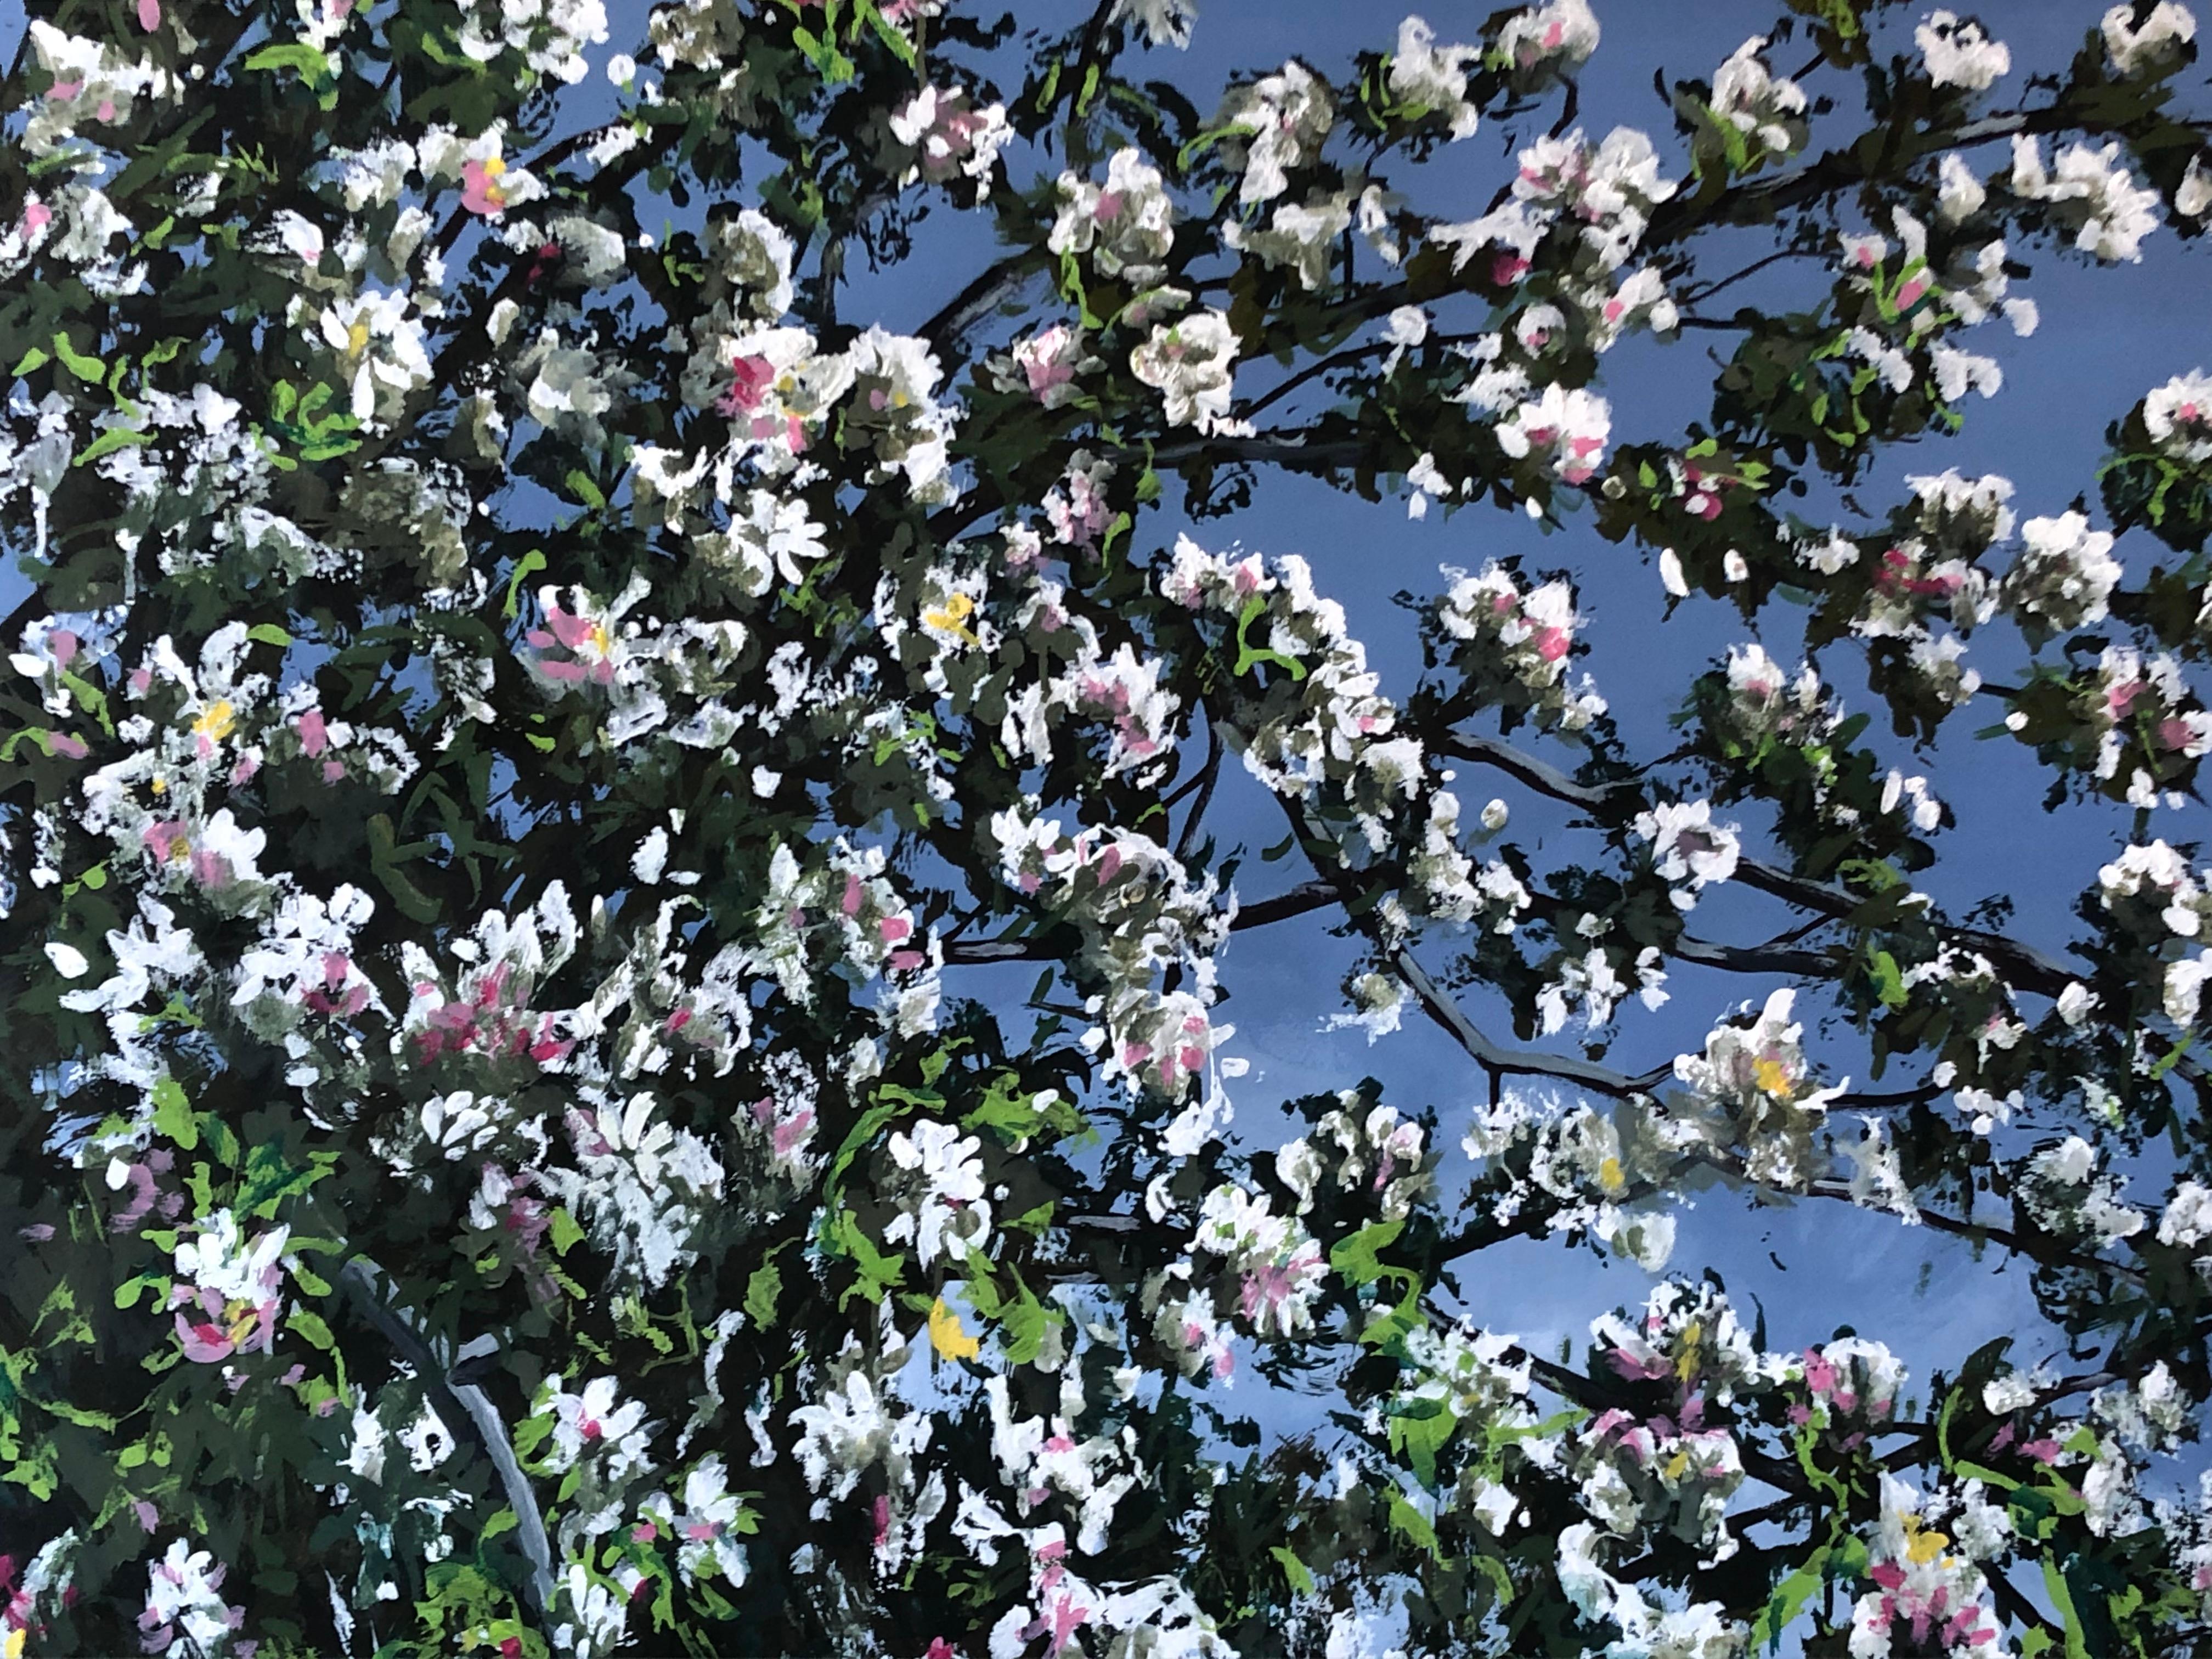 Landscape Painting de Louis Danicher - Pommier fleuri dans un ciel bleu